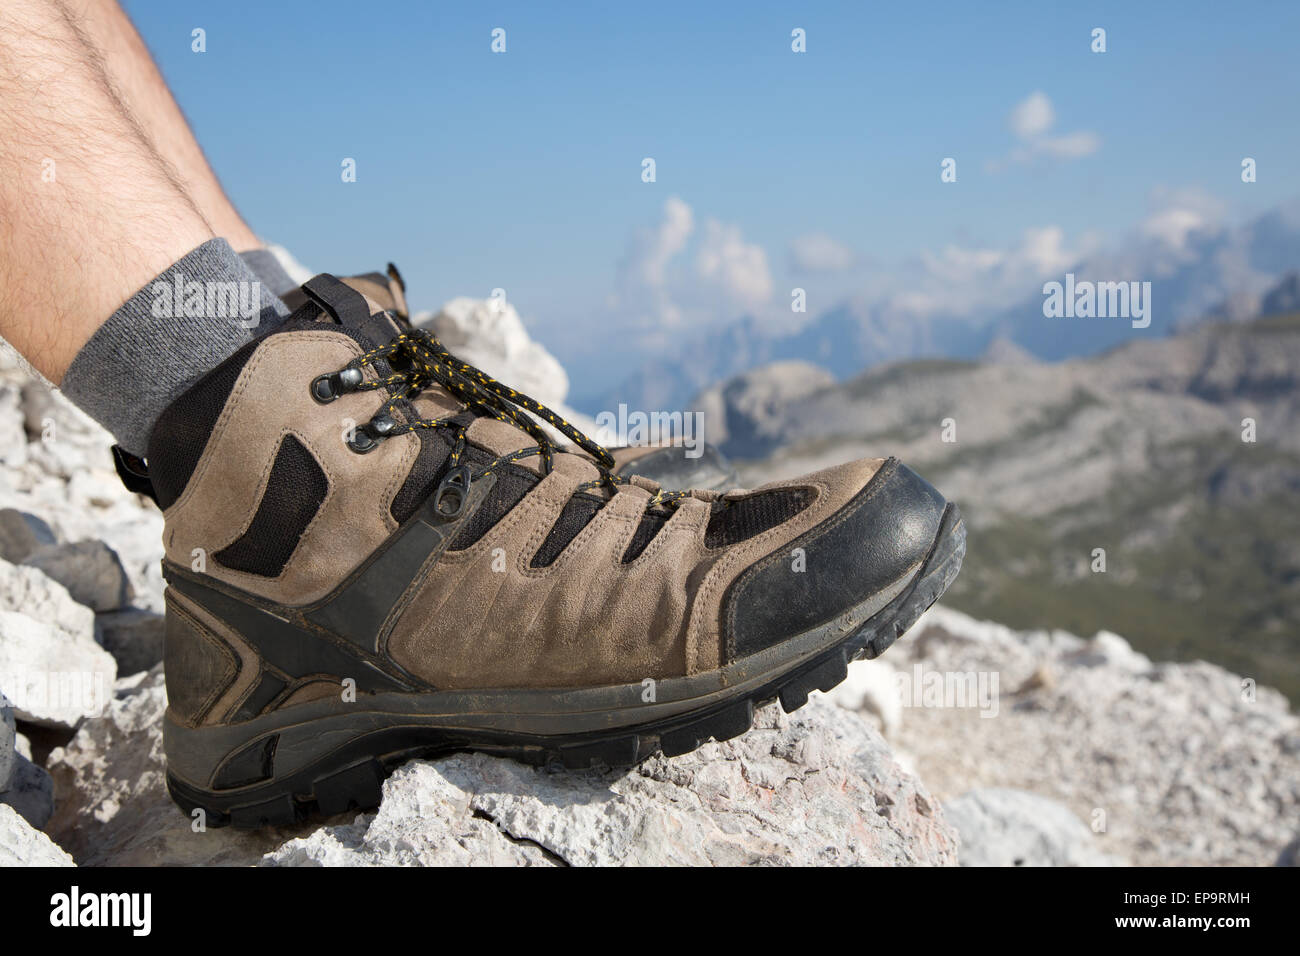 Wanderschuhe von einem Wanderer in den Bergen Stock Photo